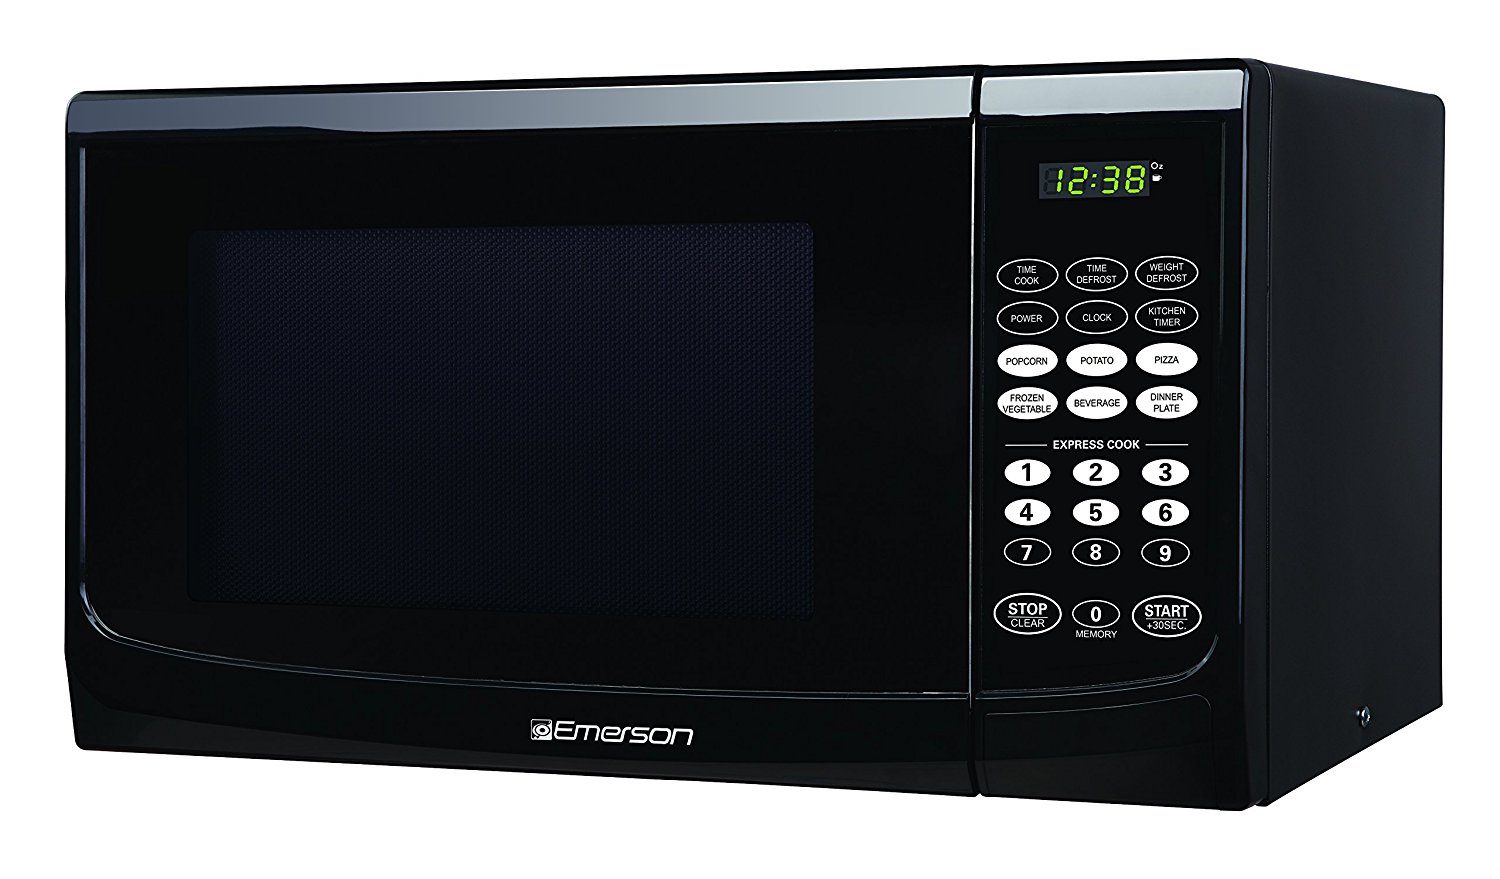 4 Best microwaves for seniors as of 2020 - Slant